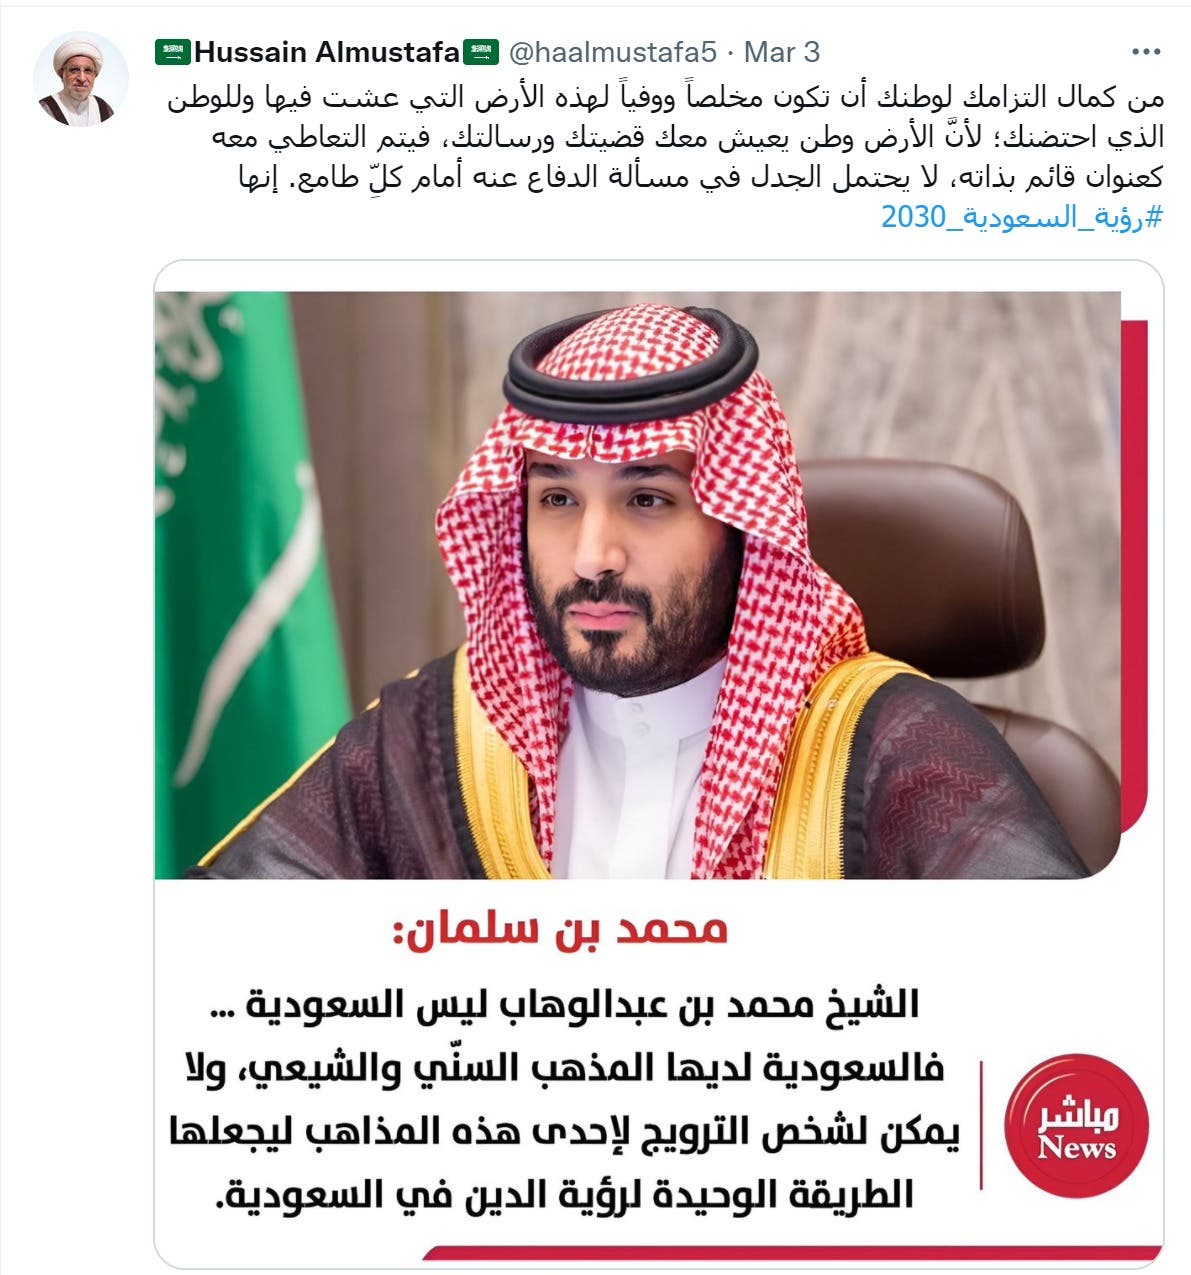 تغريدة الشيخ المصطفى تعليقاً على حوار الأمير محمد بن سلمان